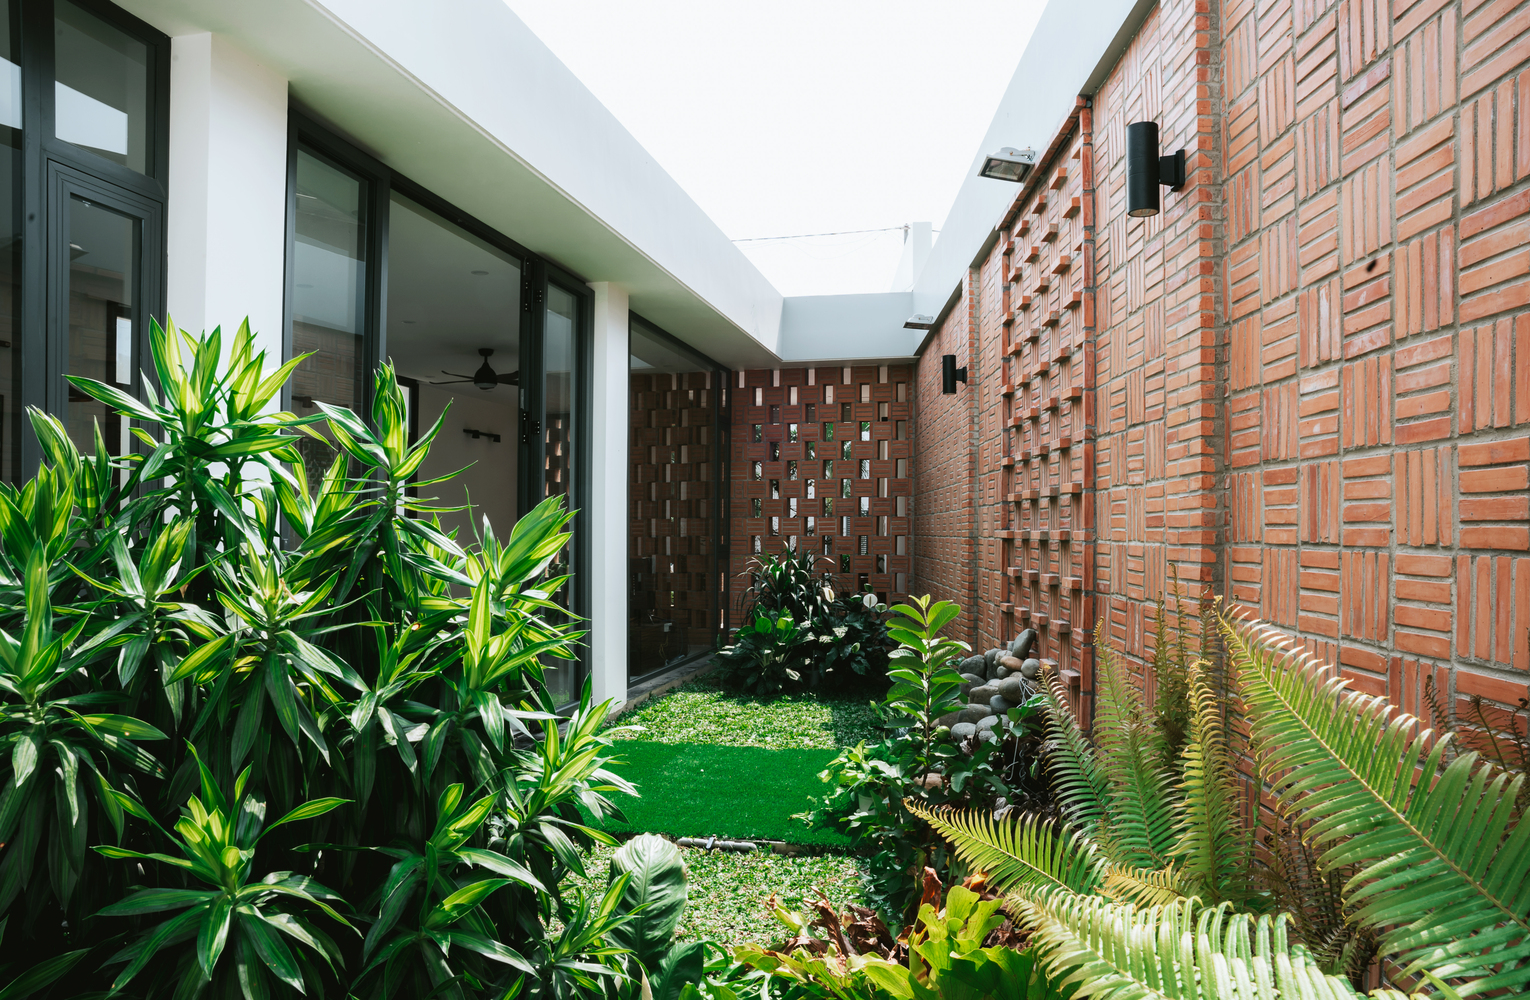 Cây xanh xuất hiện đan xen, xuyên suốt ngôi nhà, mang lại bầu không khí nghỉ dưỡng trong một công trình cấp 4 cho gia chủ.